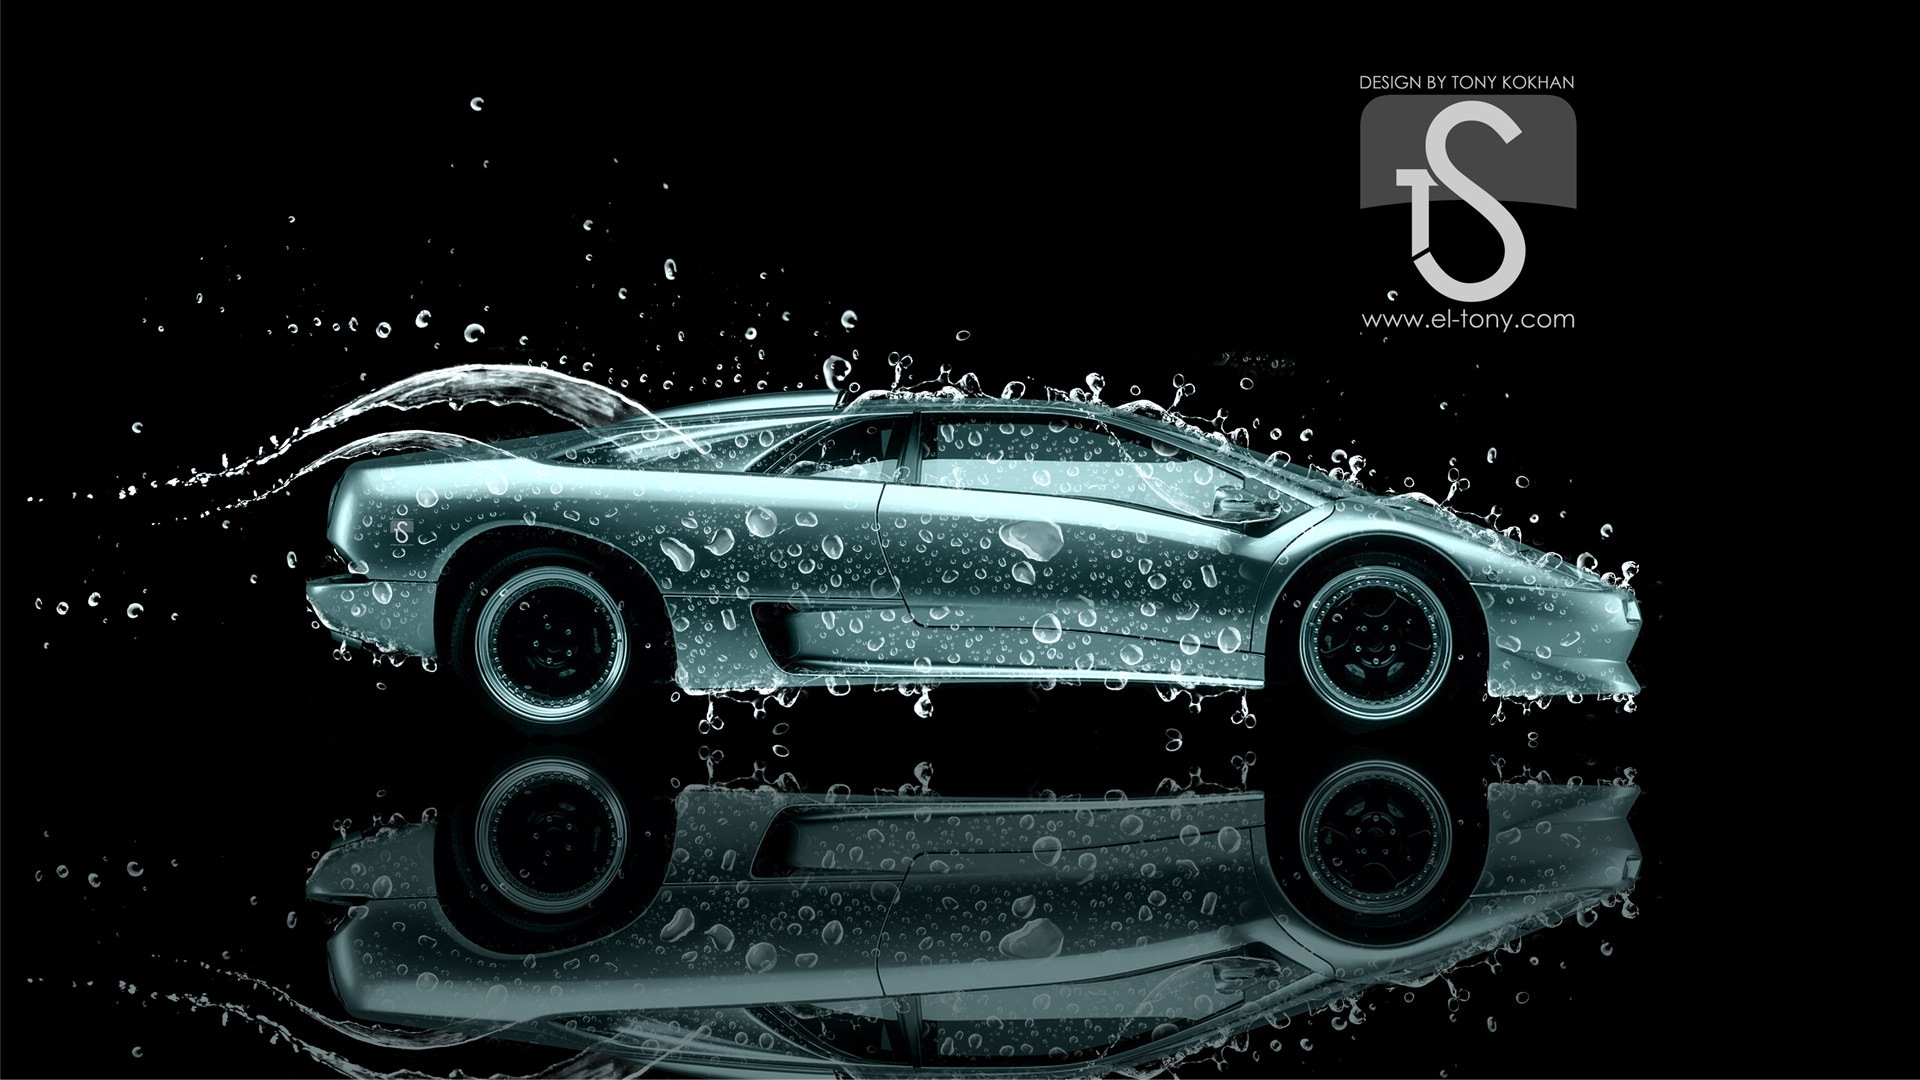 물 방울 스플래시, 아름다운 차 크리 에이 티브 디자인 배경 화면 #27 - 1920x1080